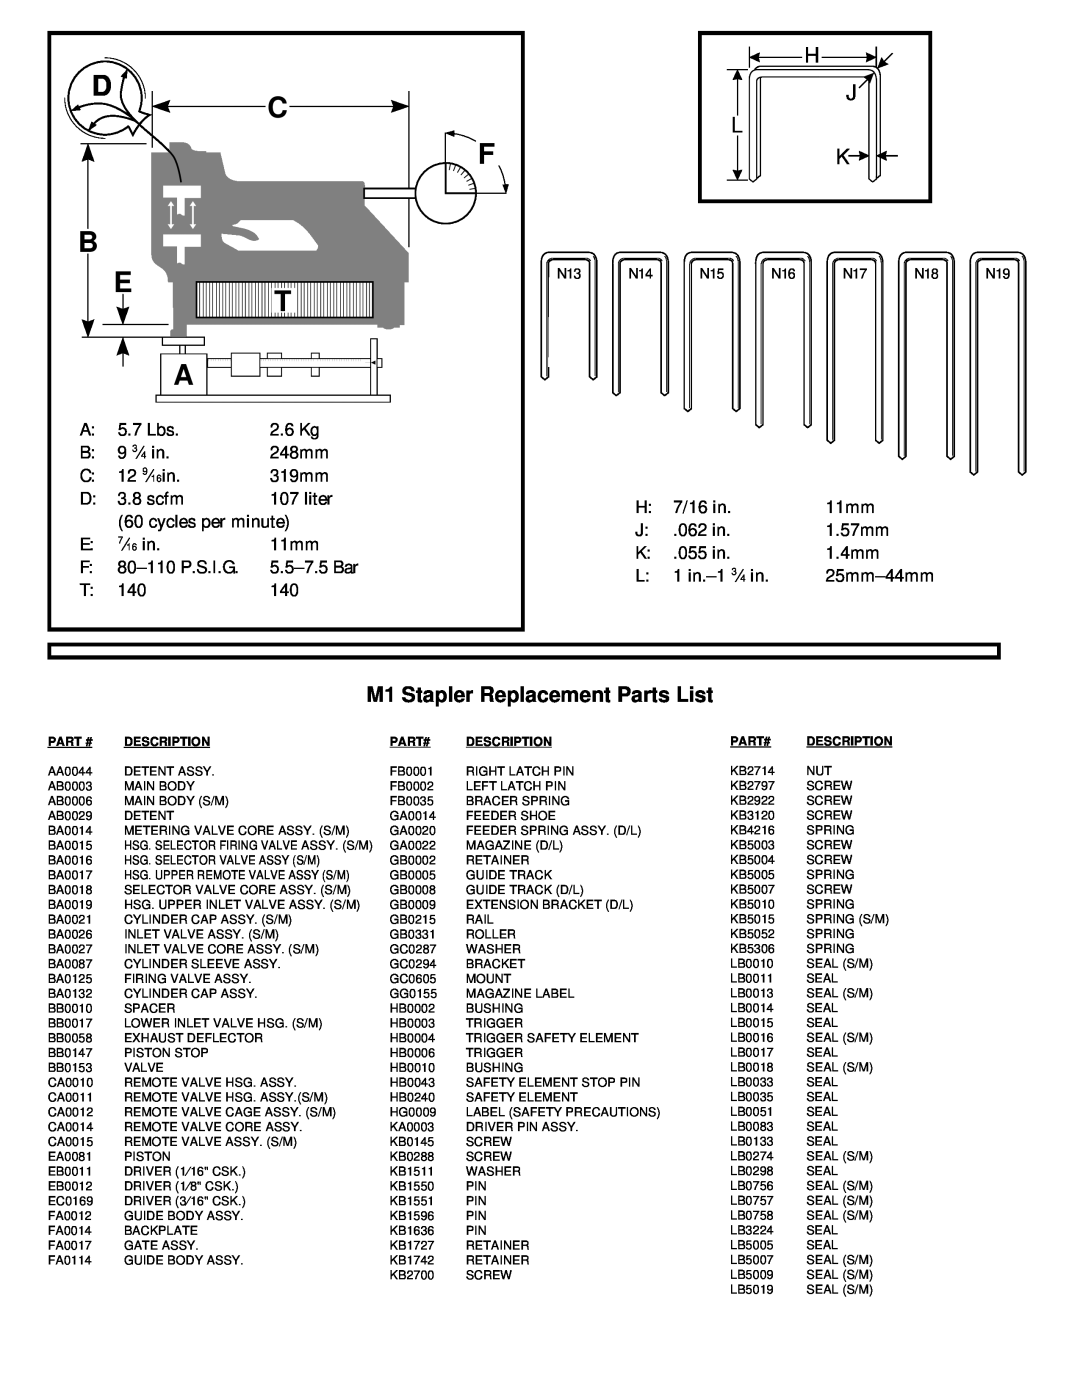 Senco manual M1 Stapler Replacement Parts List 